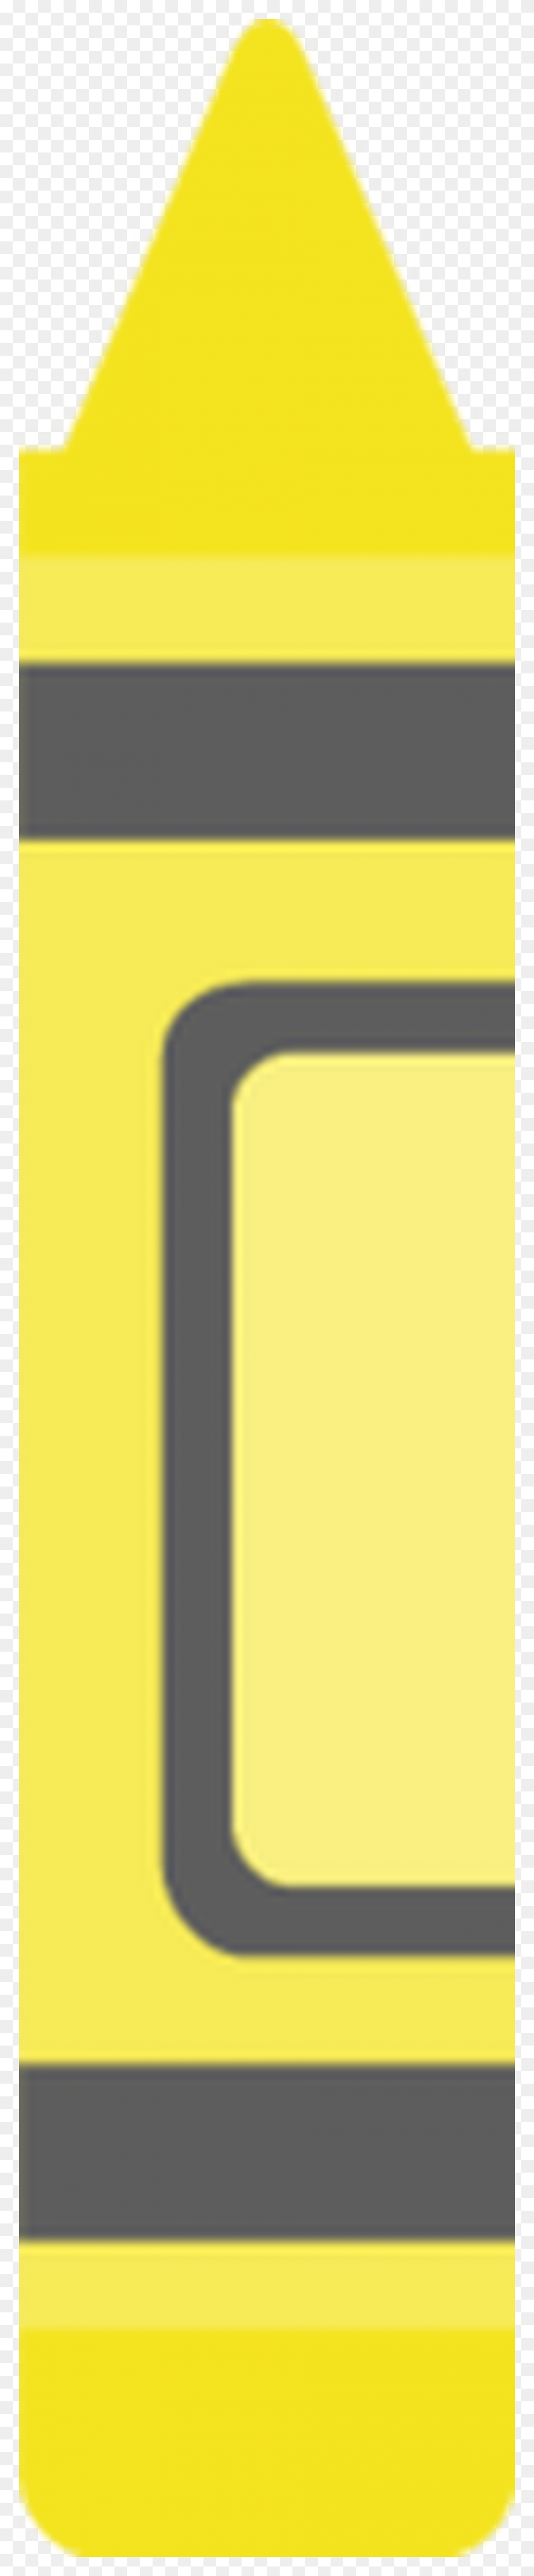 900x4610 Желтый Мелок Клипарт Цветной Клипарт - Коробка Для Карандашей Клипарт